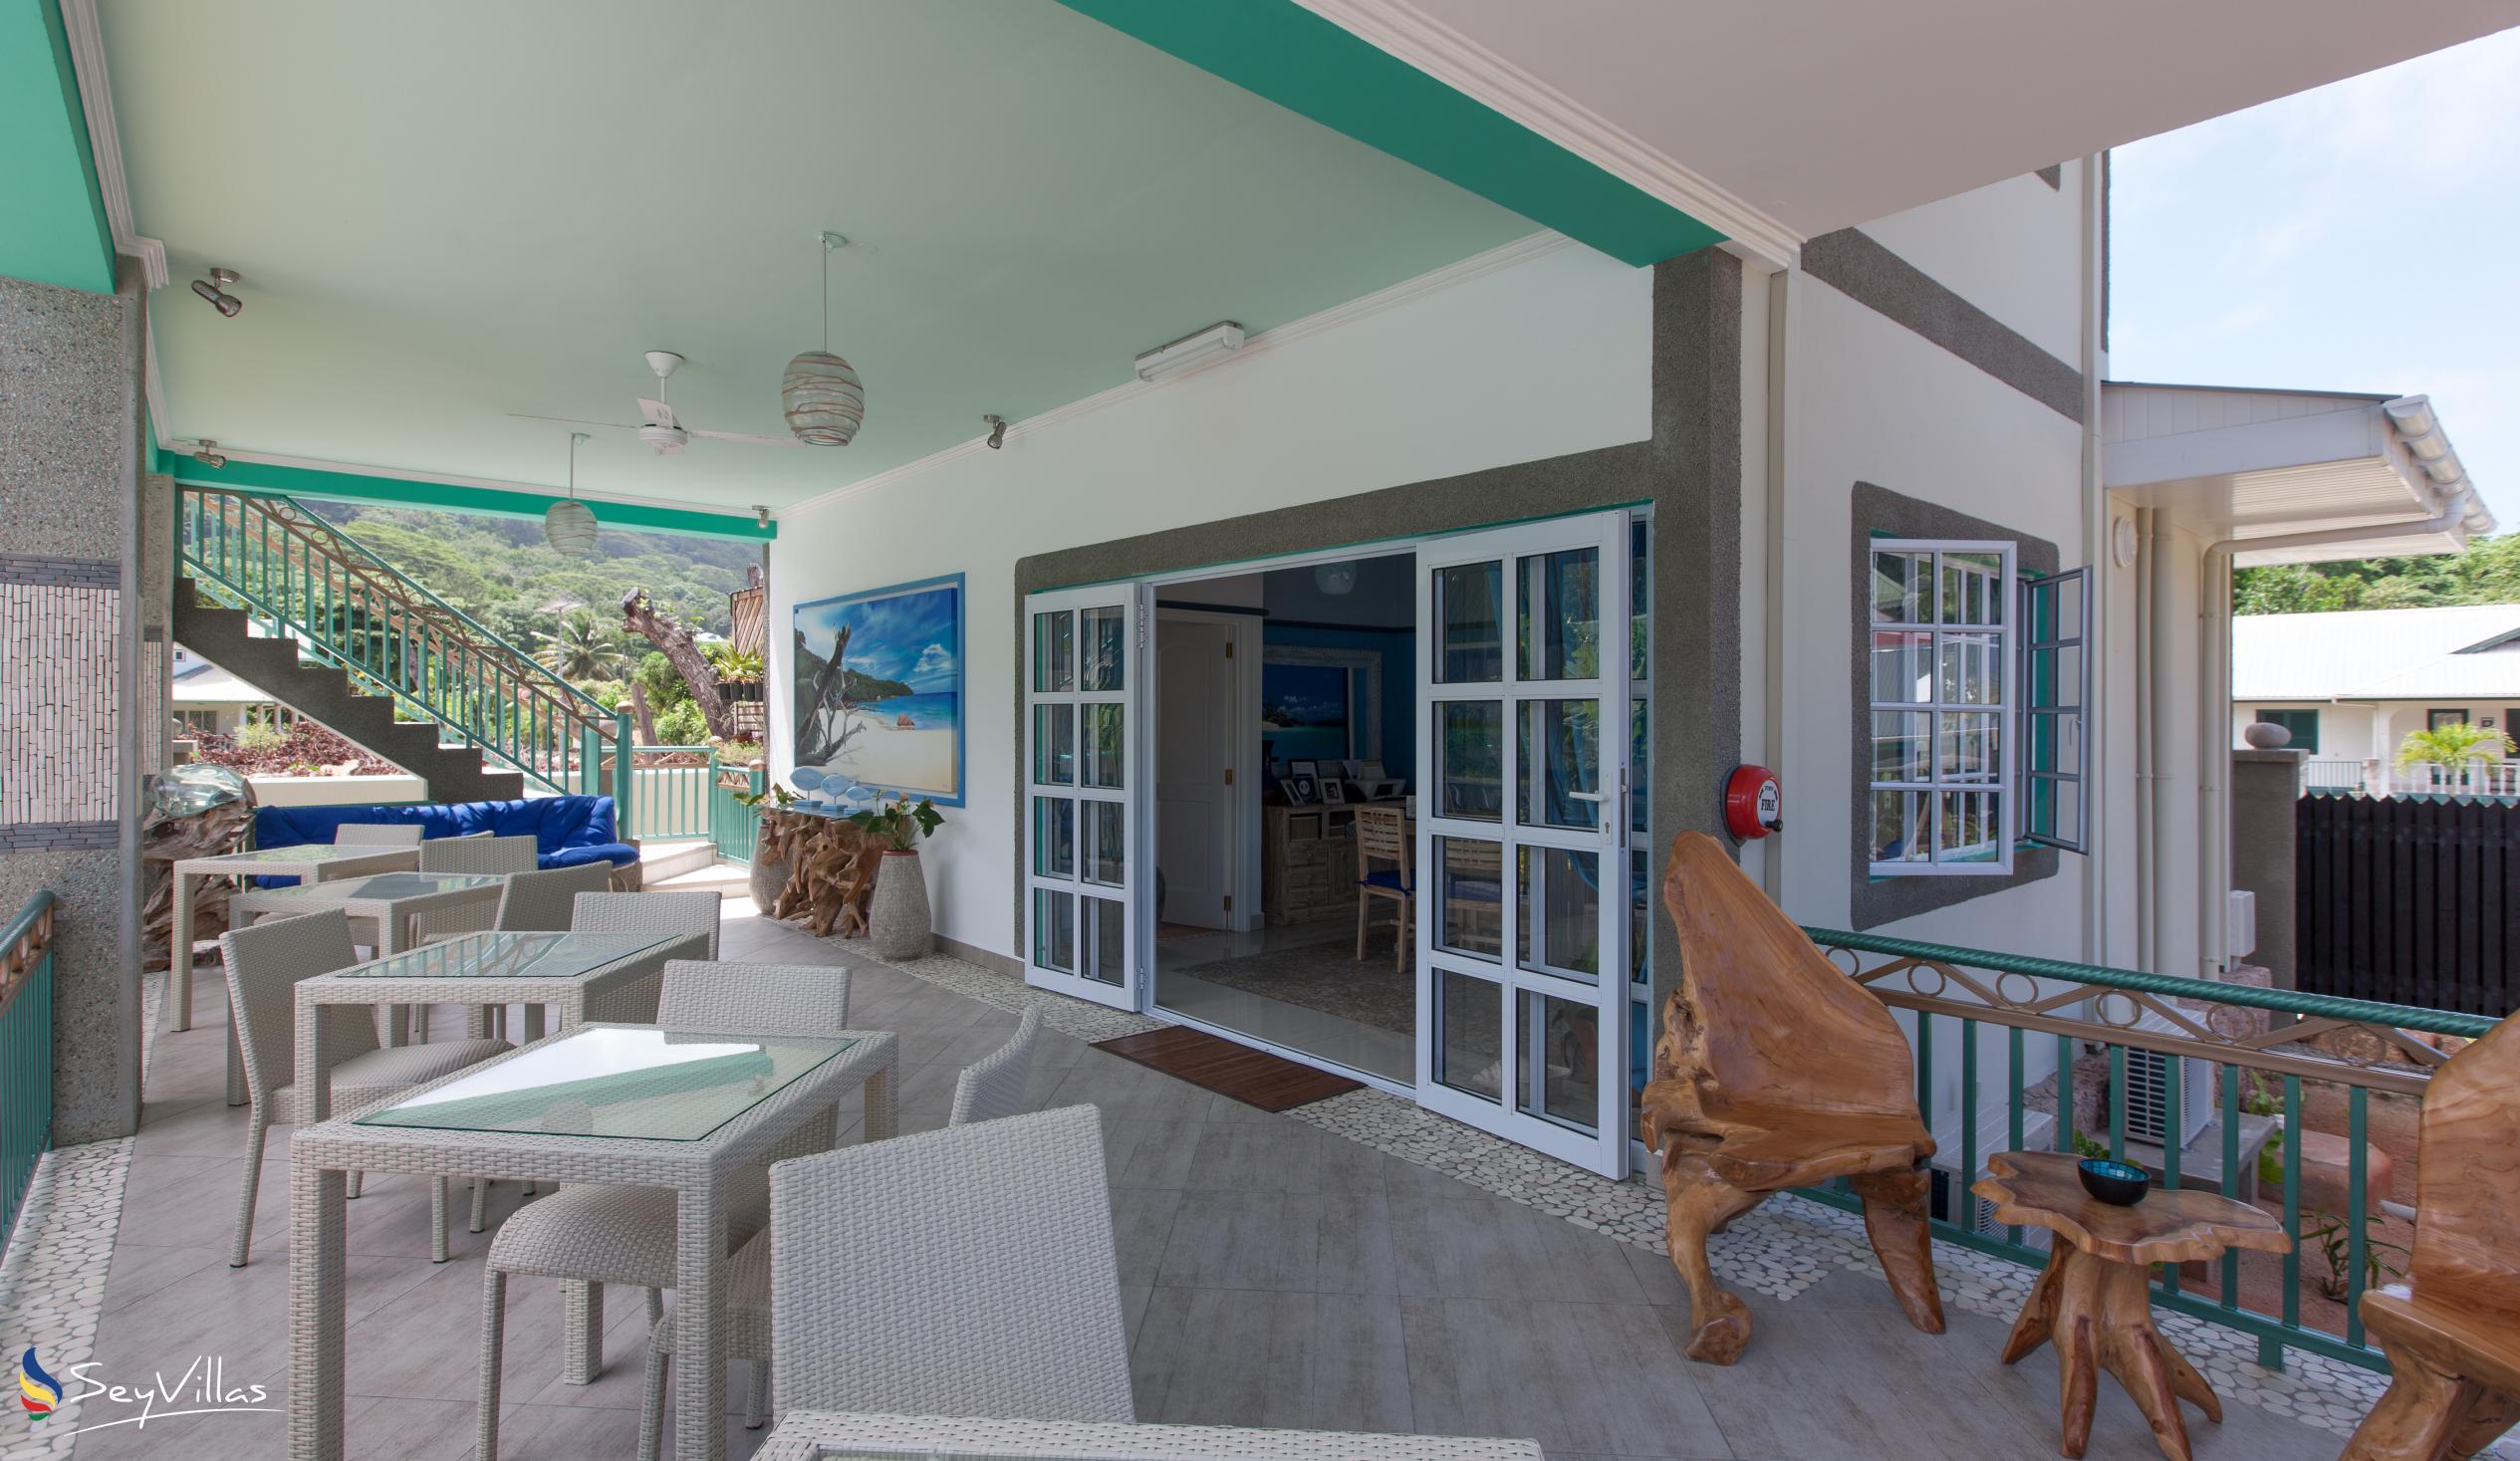 Foto 45: Villa Charme De L'ile - Appartement de luxe avec vue sur la piscine - La Digue (Seychelles)